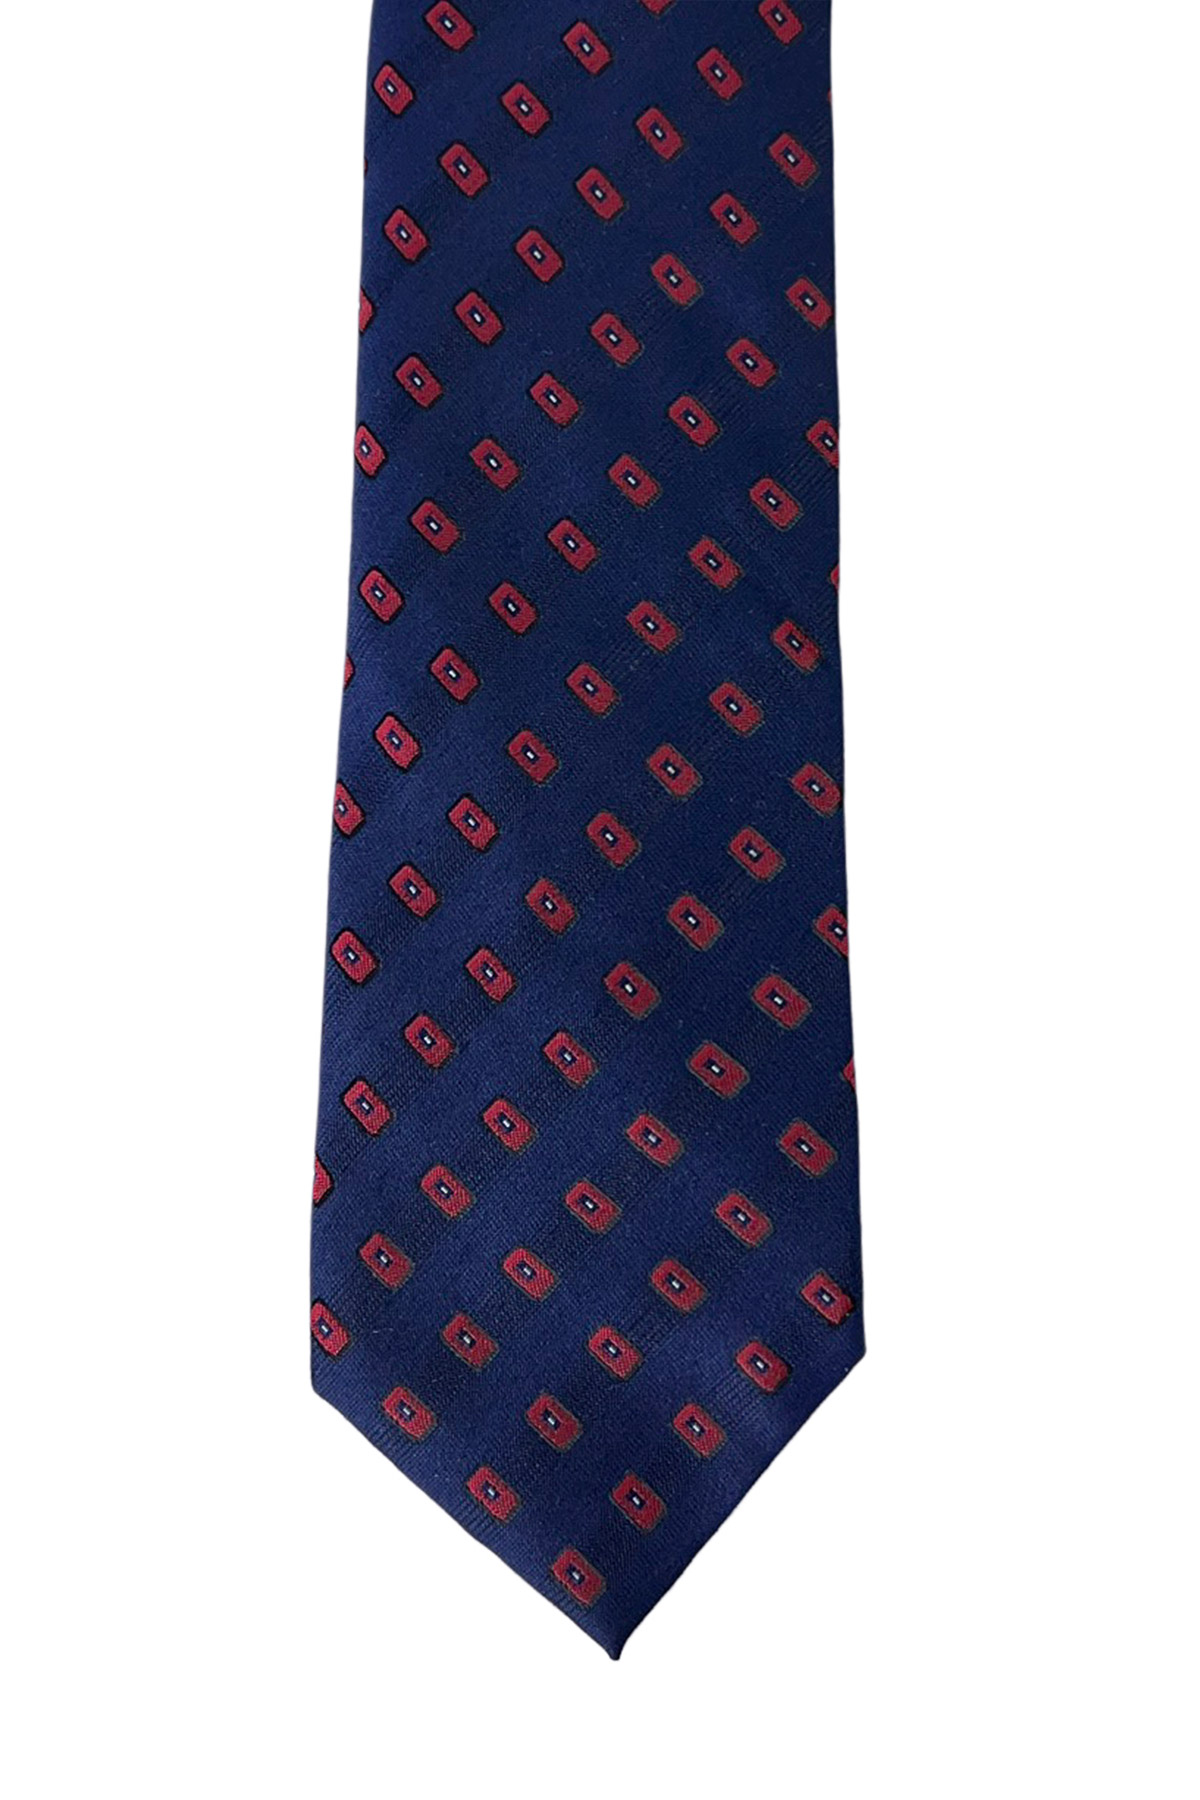 Cravatta uomo navy blu Fantasia Rossa 8cm da cerimonia elegante 100% seta